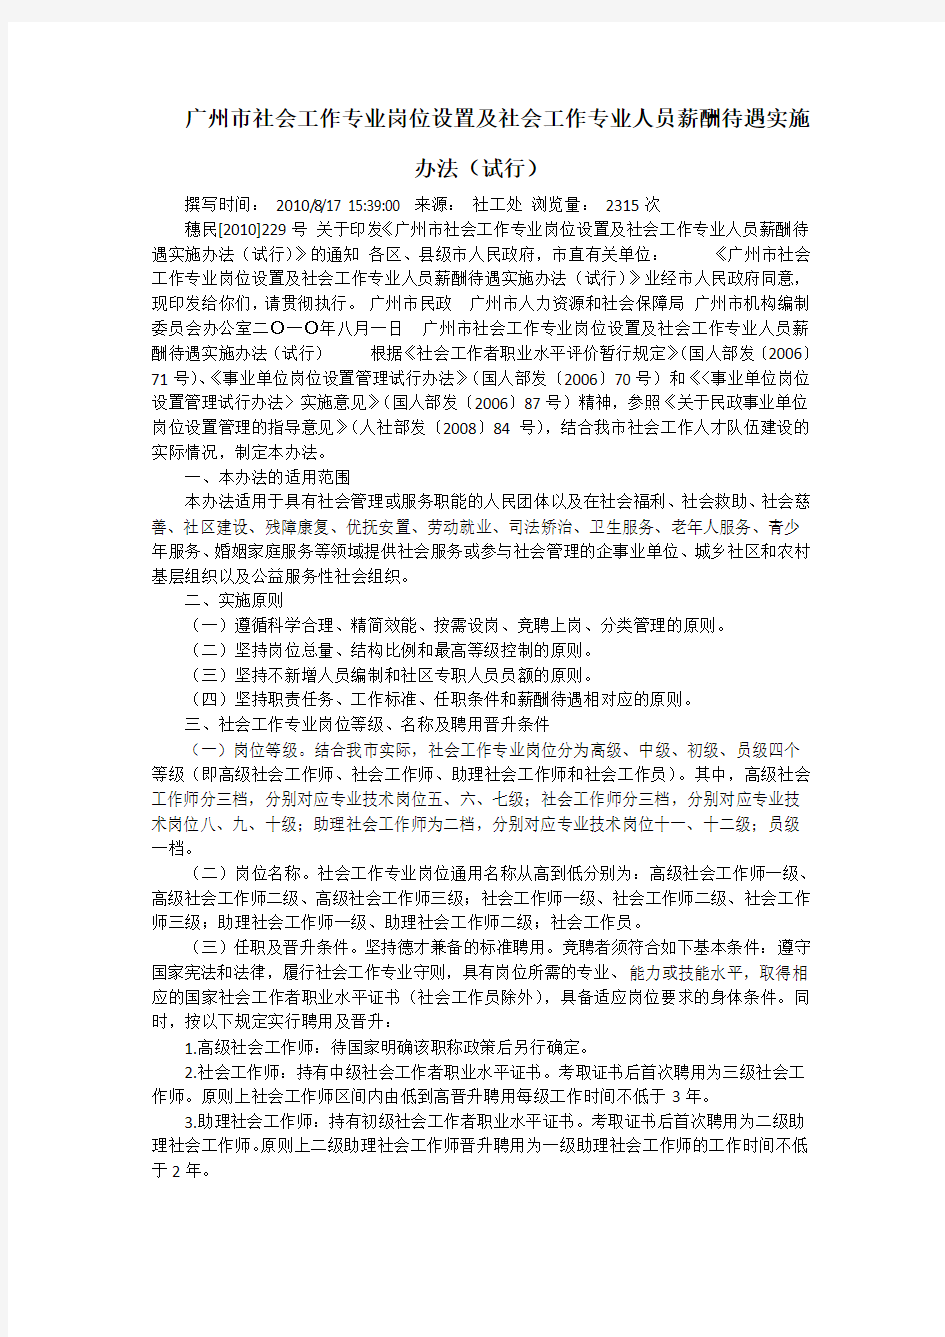 广州市社会工作专业岗位设置及社会工作专业人员薪酬待遇实施办法